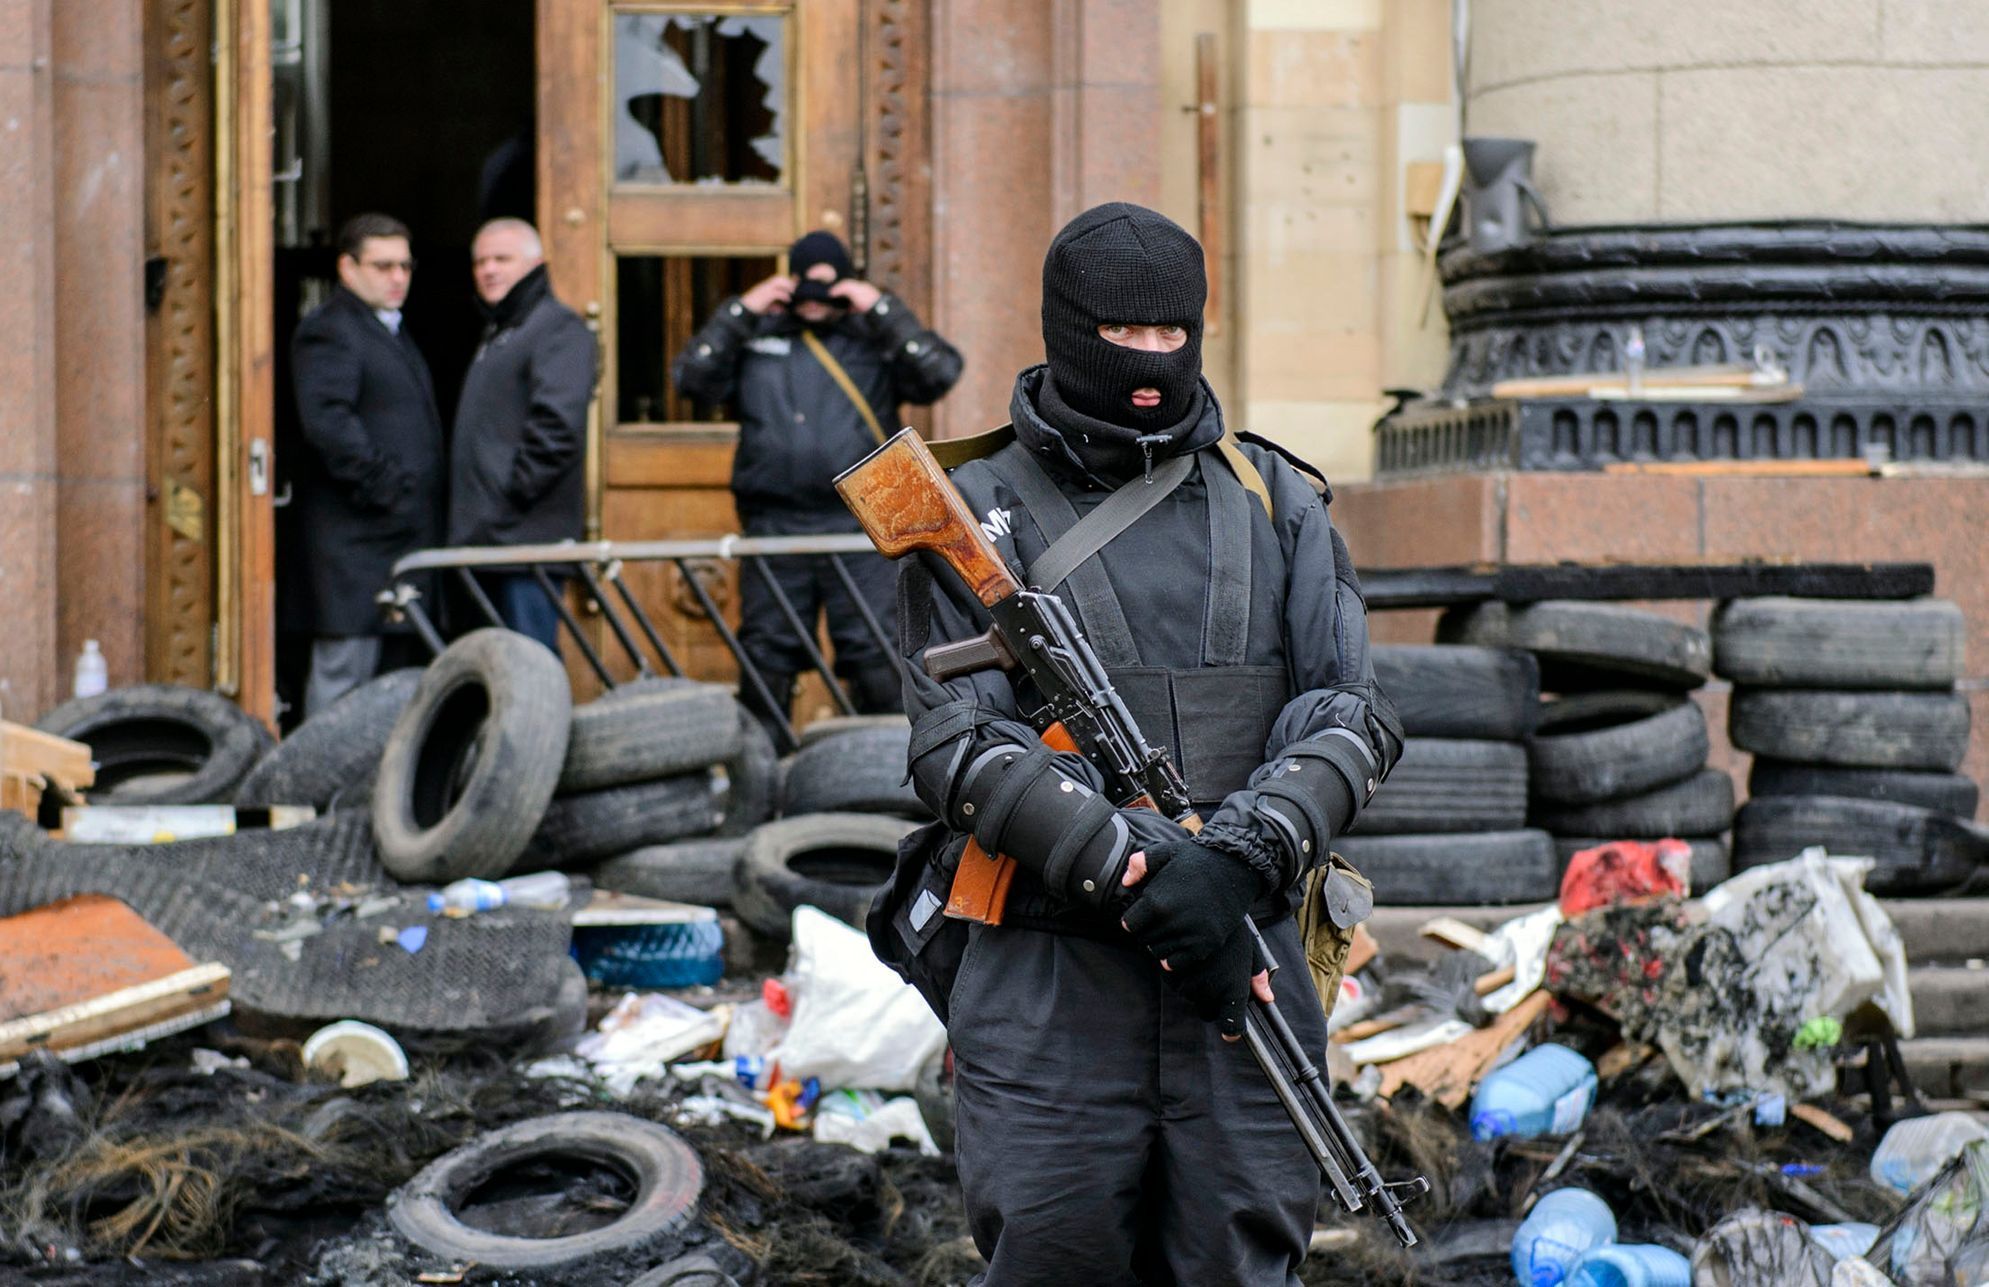 Člen ukrajinských speciálních jednotek hlídkuje před správní budovou v Charkově.